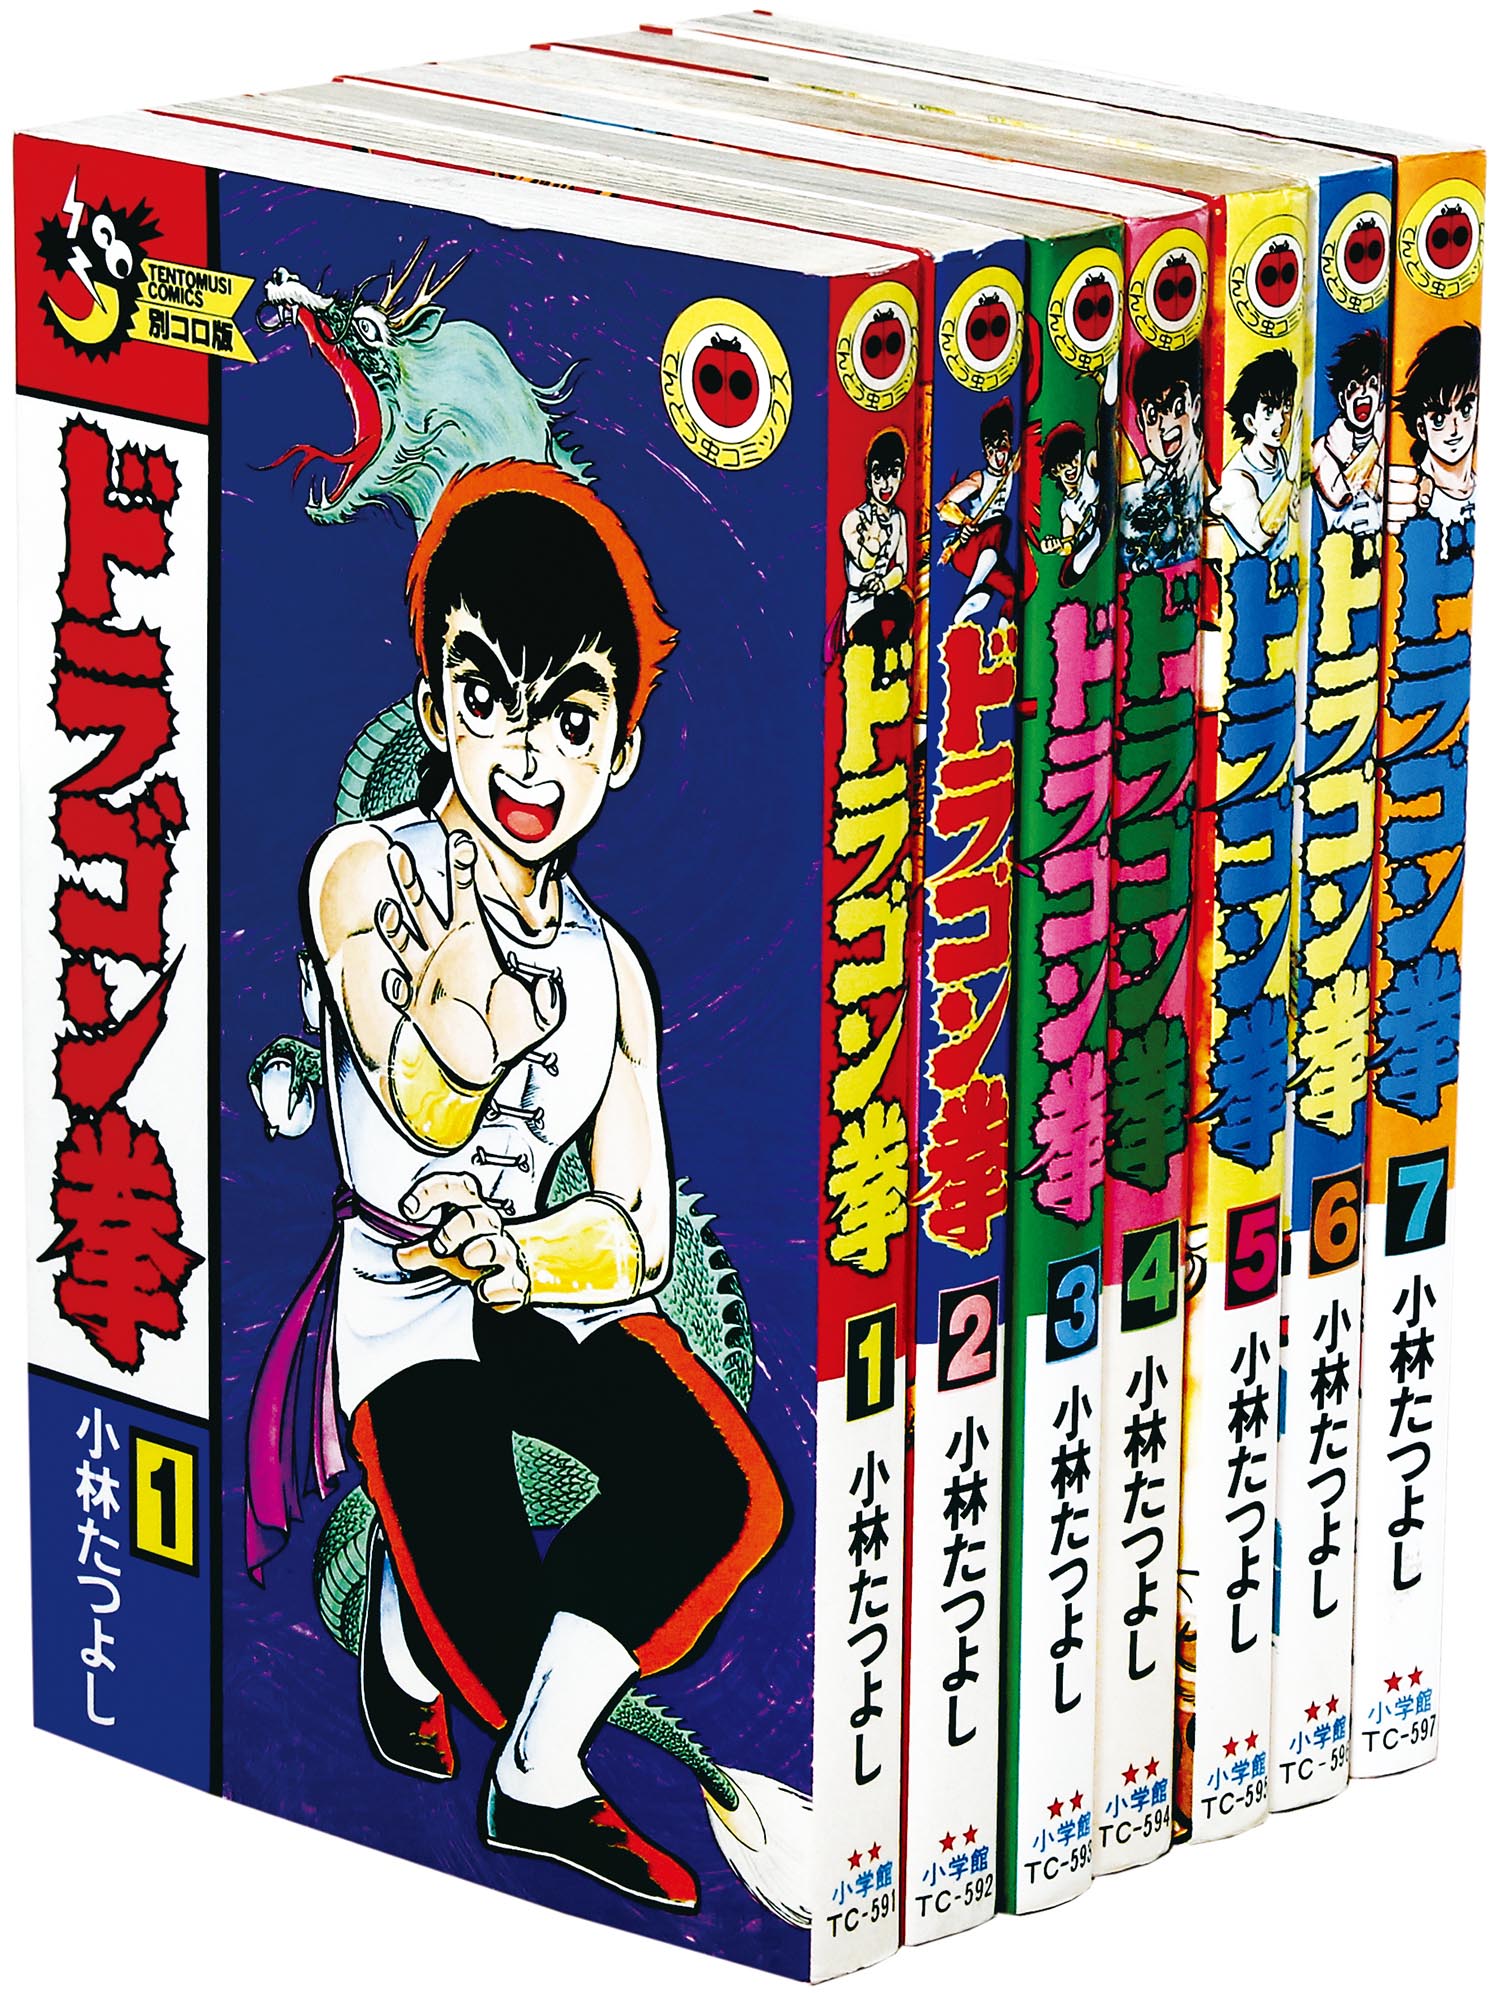 てんとう虫コミックス/小林たつよし「ドラゴン拳 全7巻初版セット」